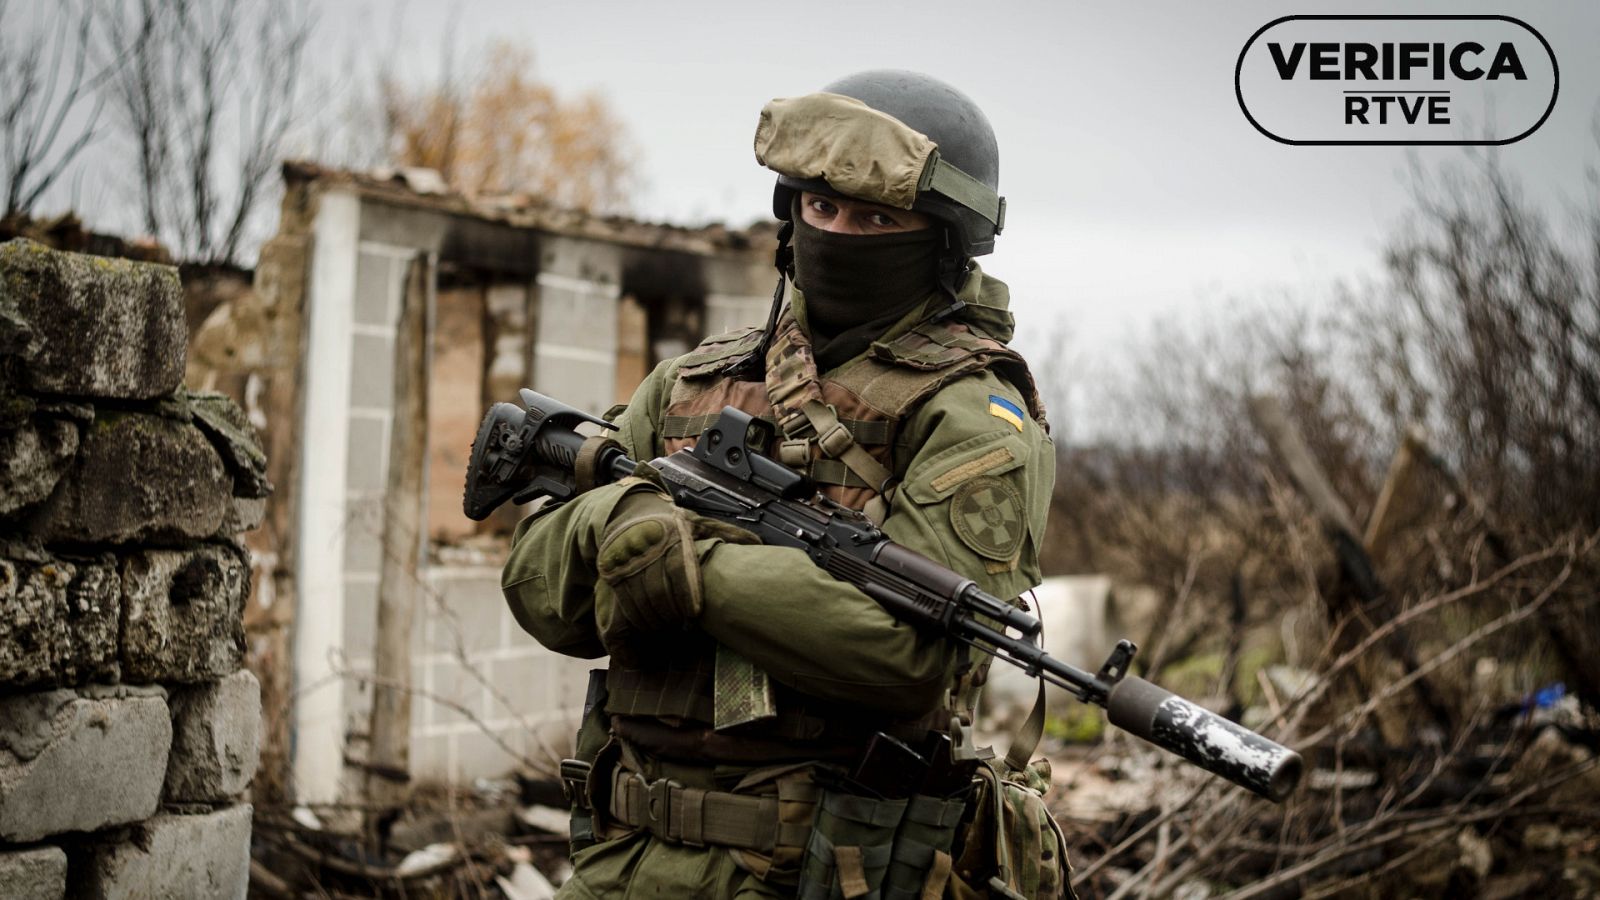 Imagen de un soldado ucraniano, junto con el sello de VerificaRTVE en negro.